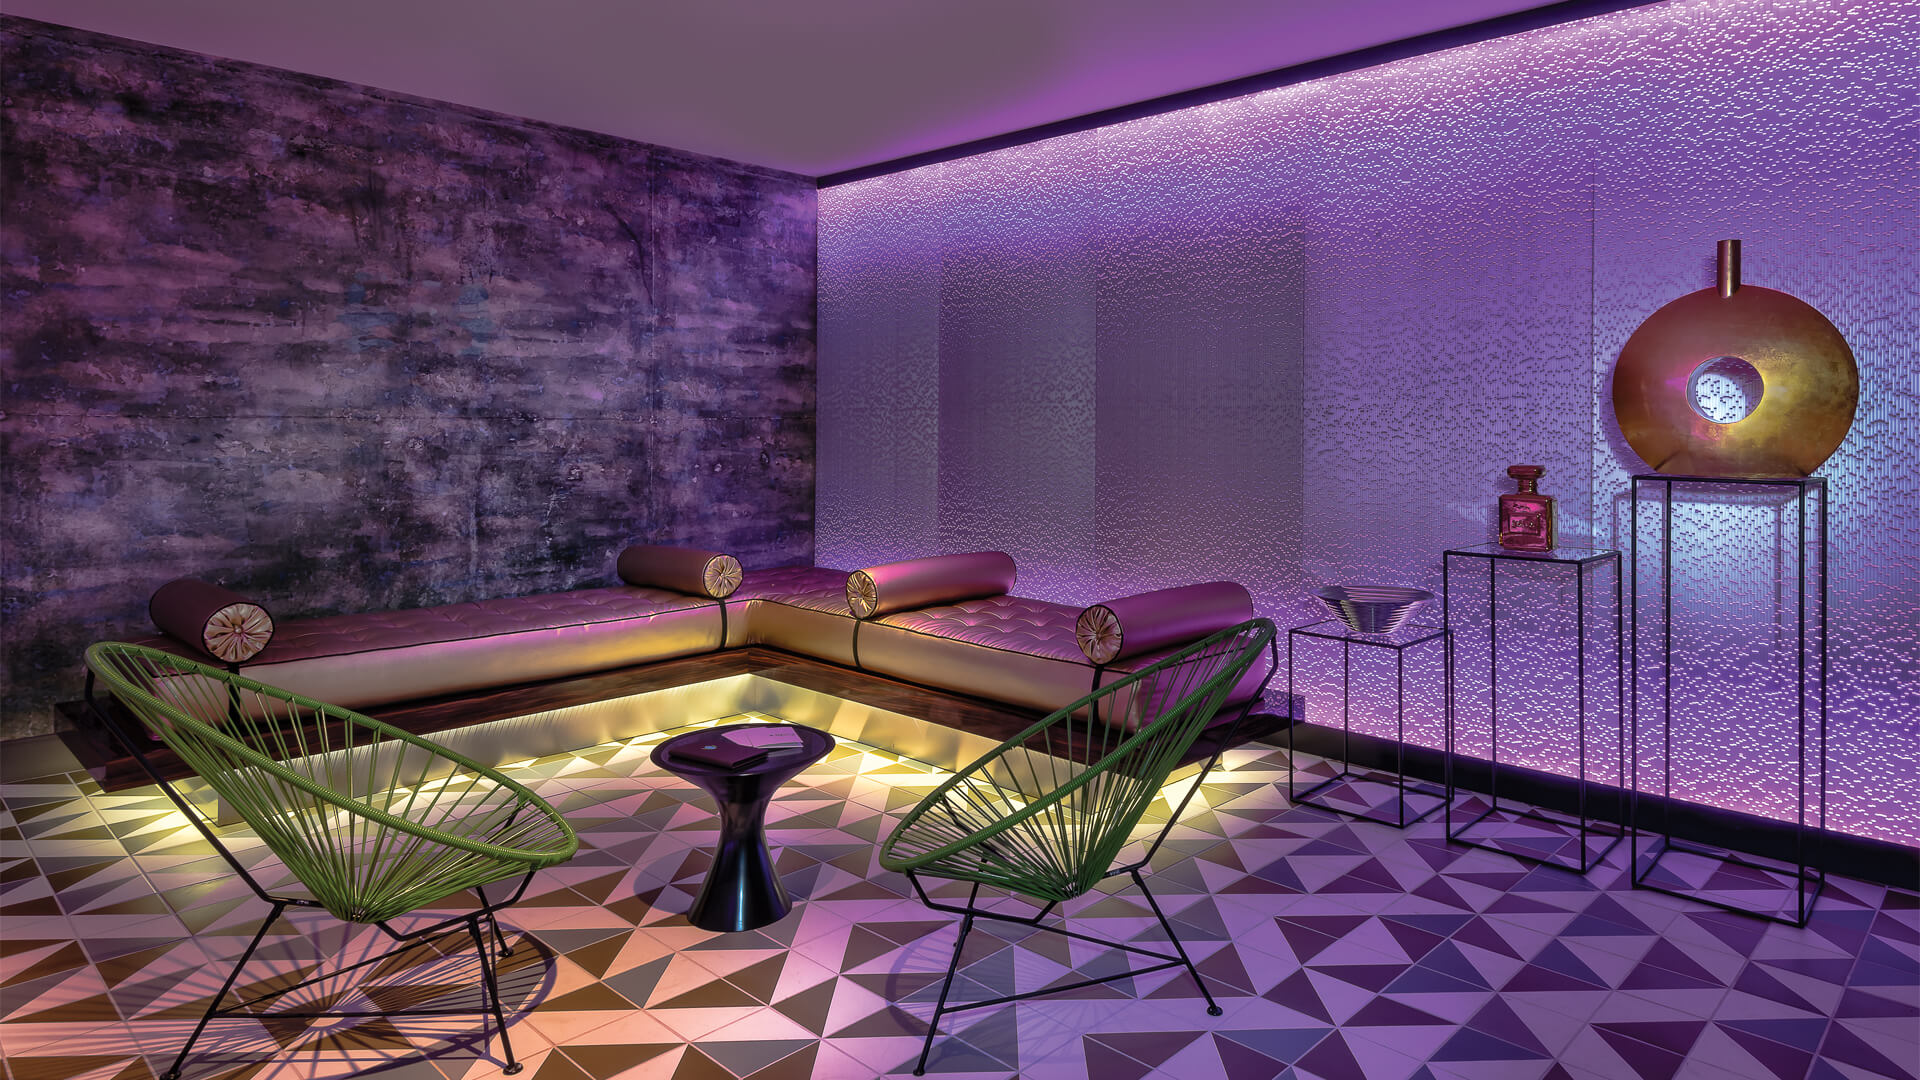 Paris Las Vegas redesigns 2,900 rooms, launches new Voie Spa & Salon